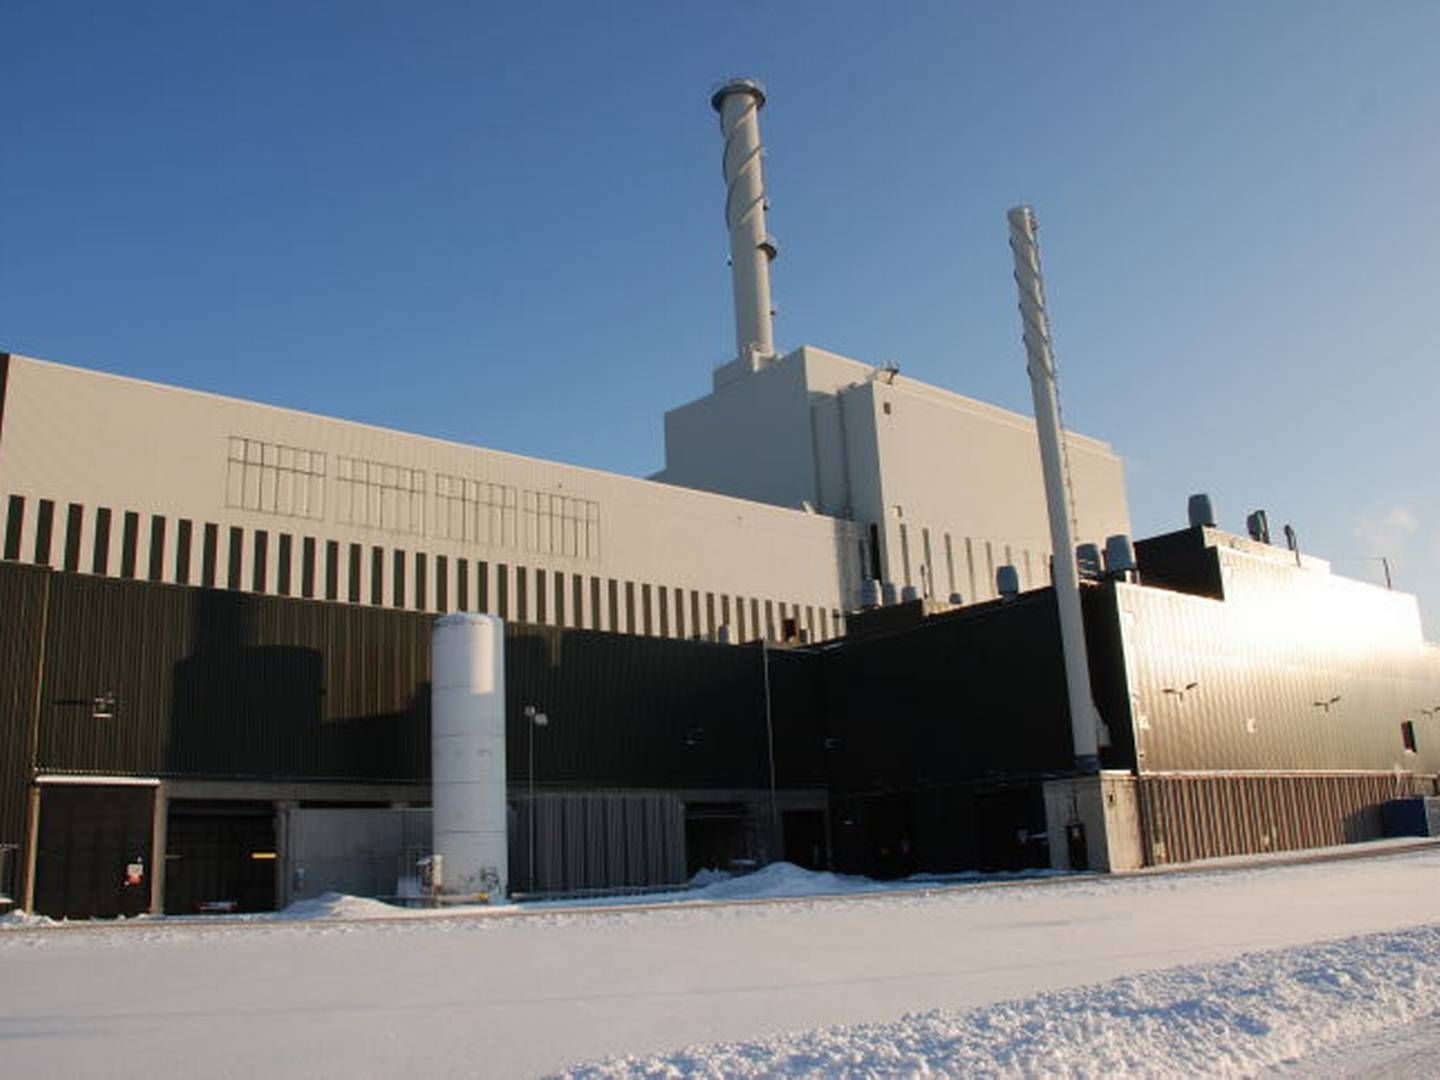 FRYKTER EFFEKTKRISE: Vedlikehold på kjernekraften kombinert med kaldt vær og lite vind, skaper bekymring for at det kan bli strøm-utkobling i Sør-Sverige. Det vil i så fall kunne gi skyhøye strømpriser. | Foto: OKG